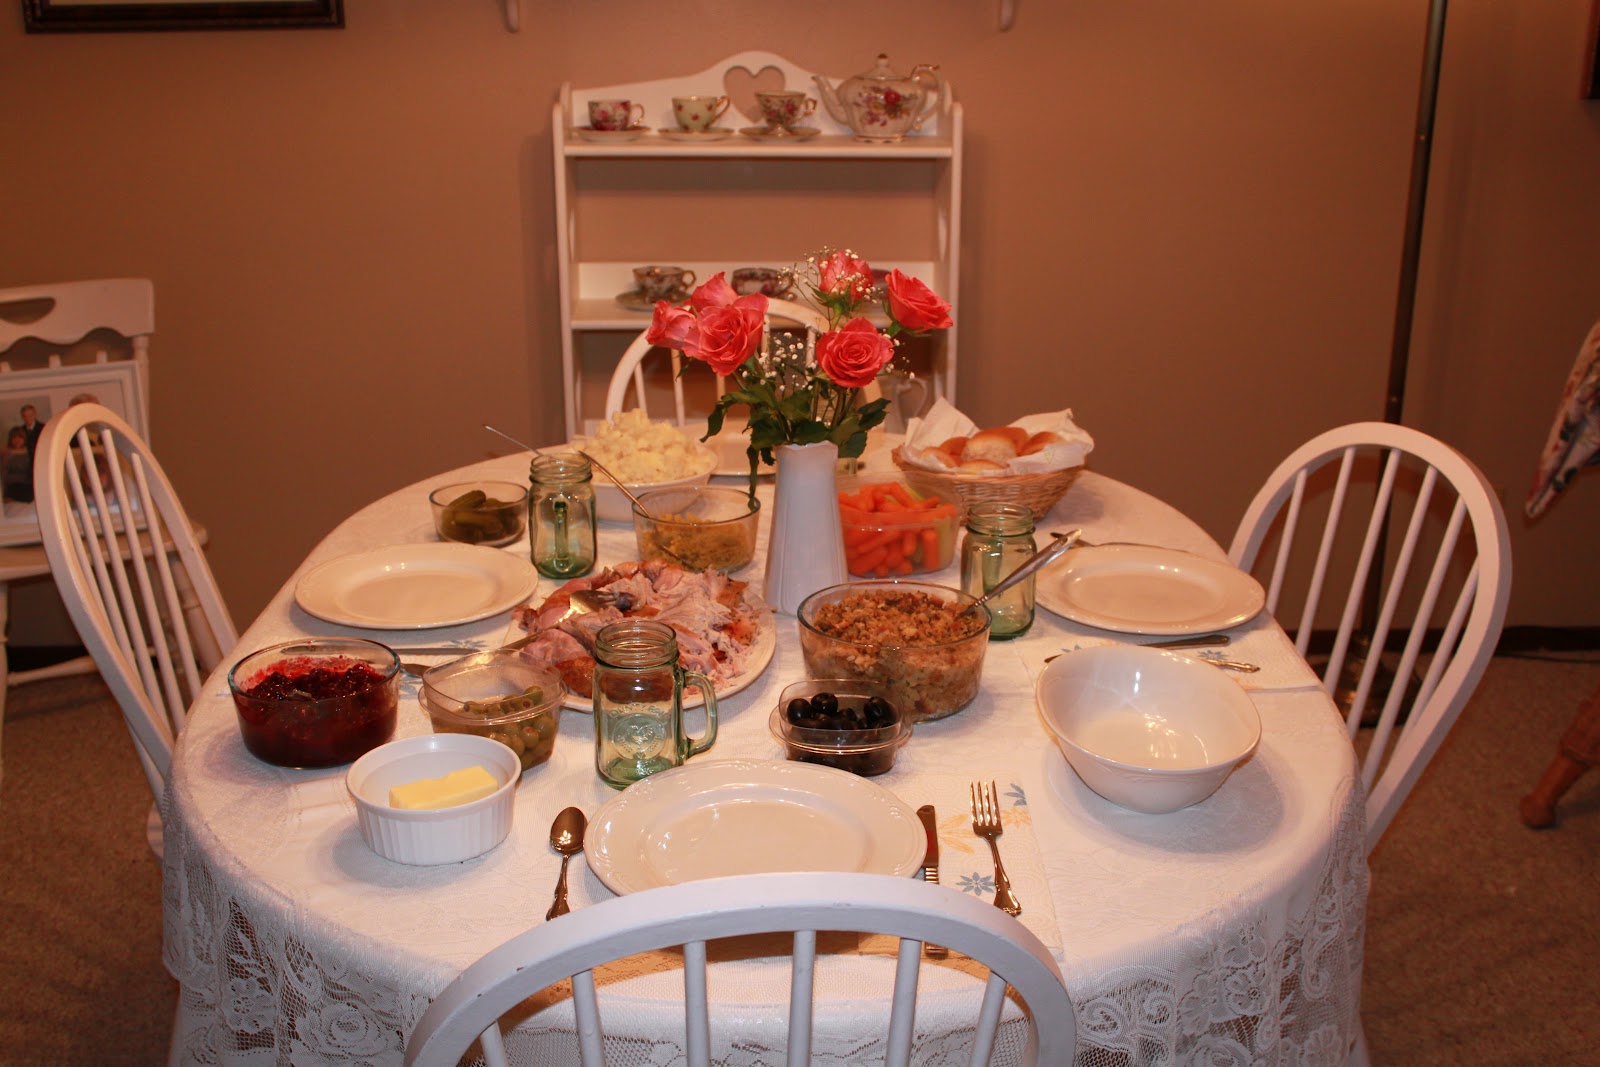 The Family Dinner Table - Shari A. Miller